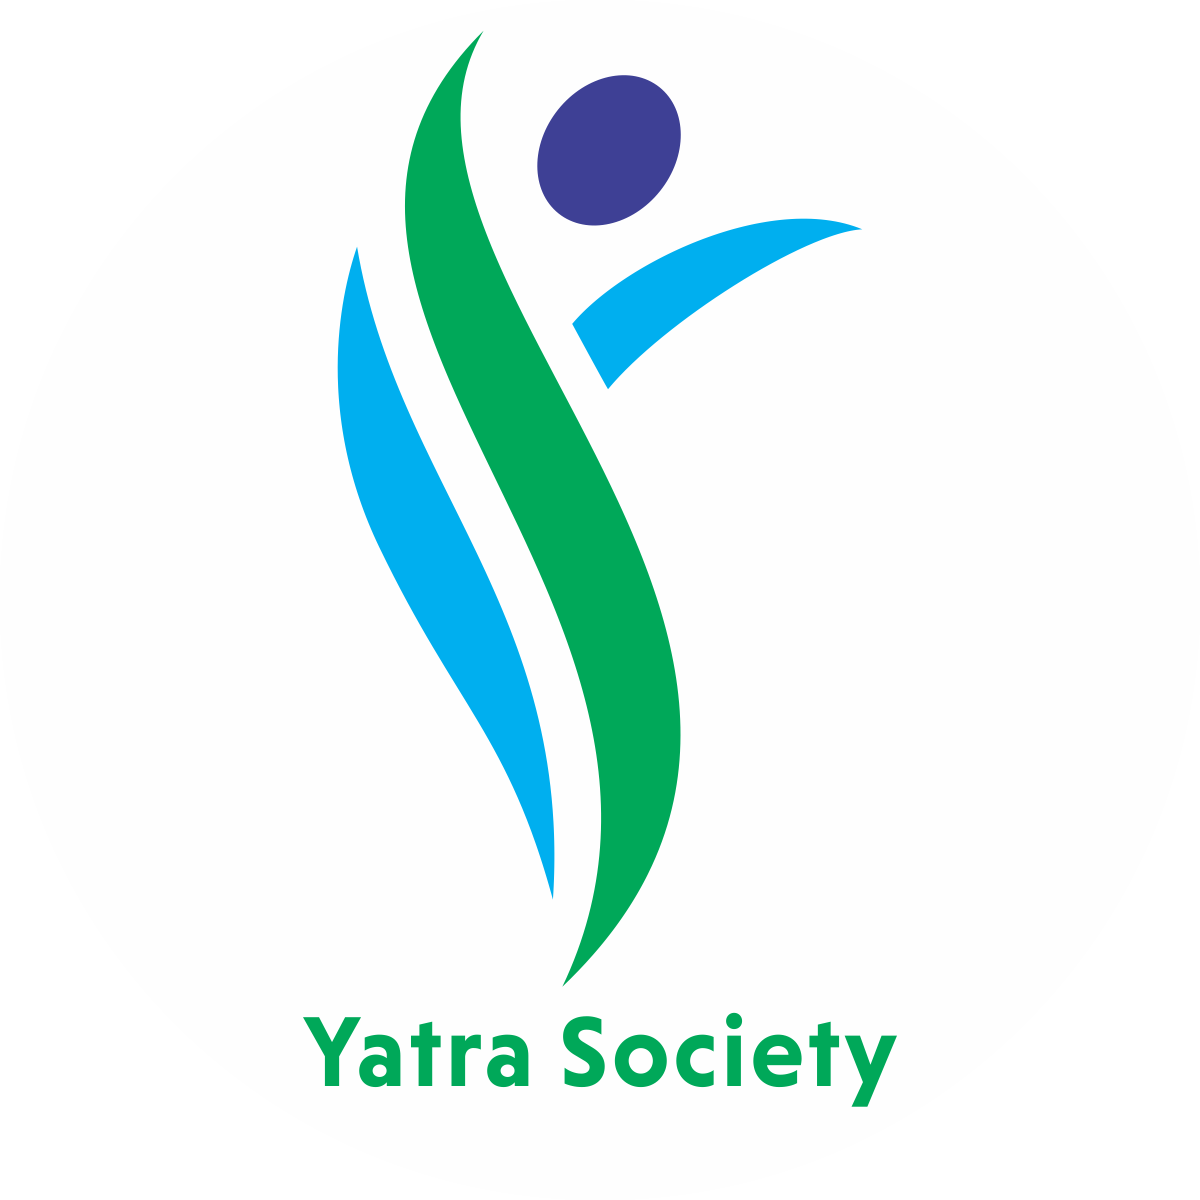 Yatra Society